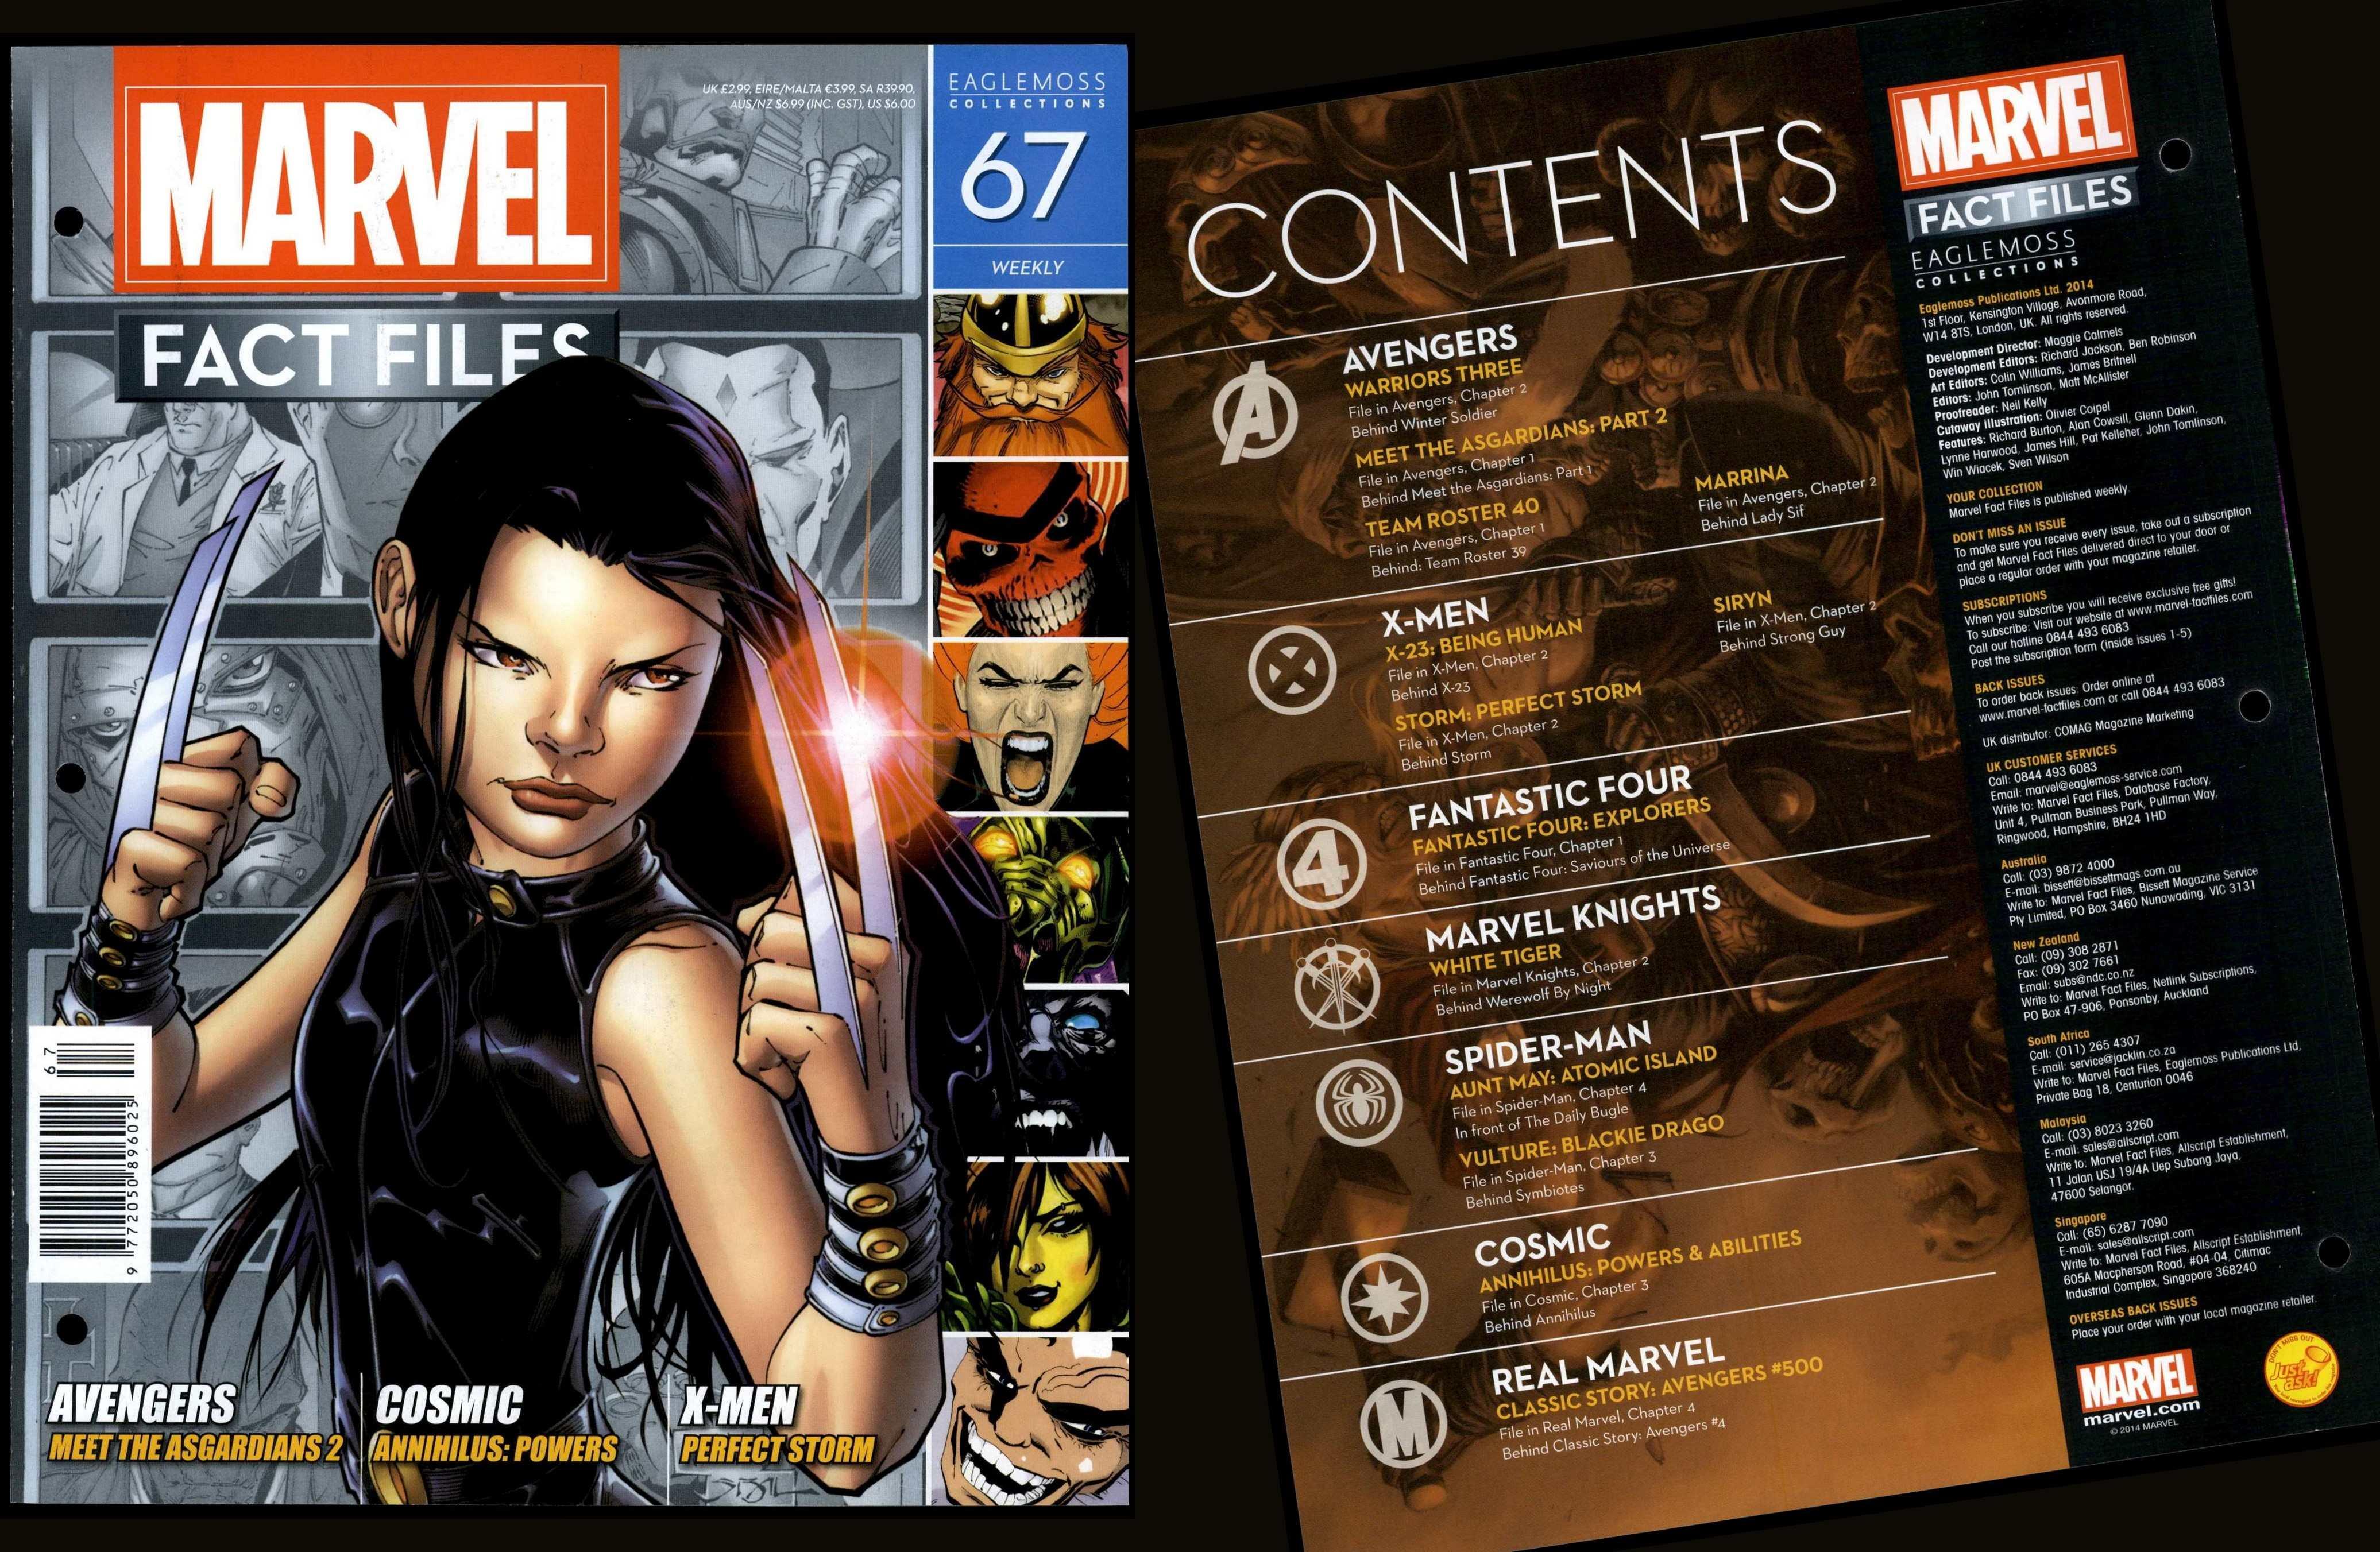 Marvel Fact Files Eaglemoss #100 Avengers - Front Cover Only